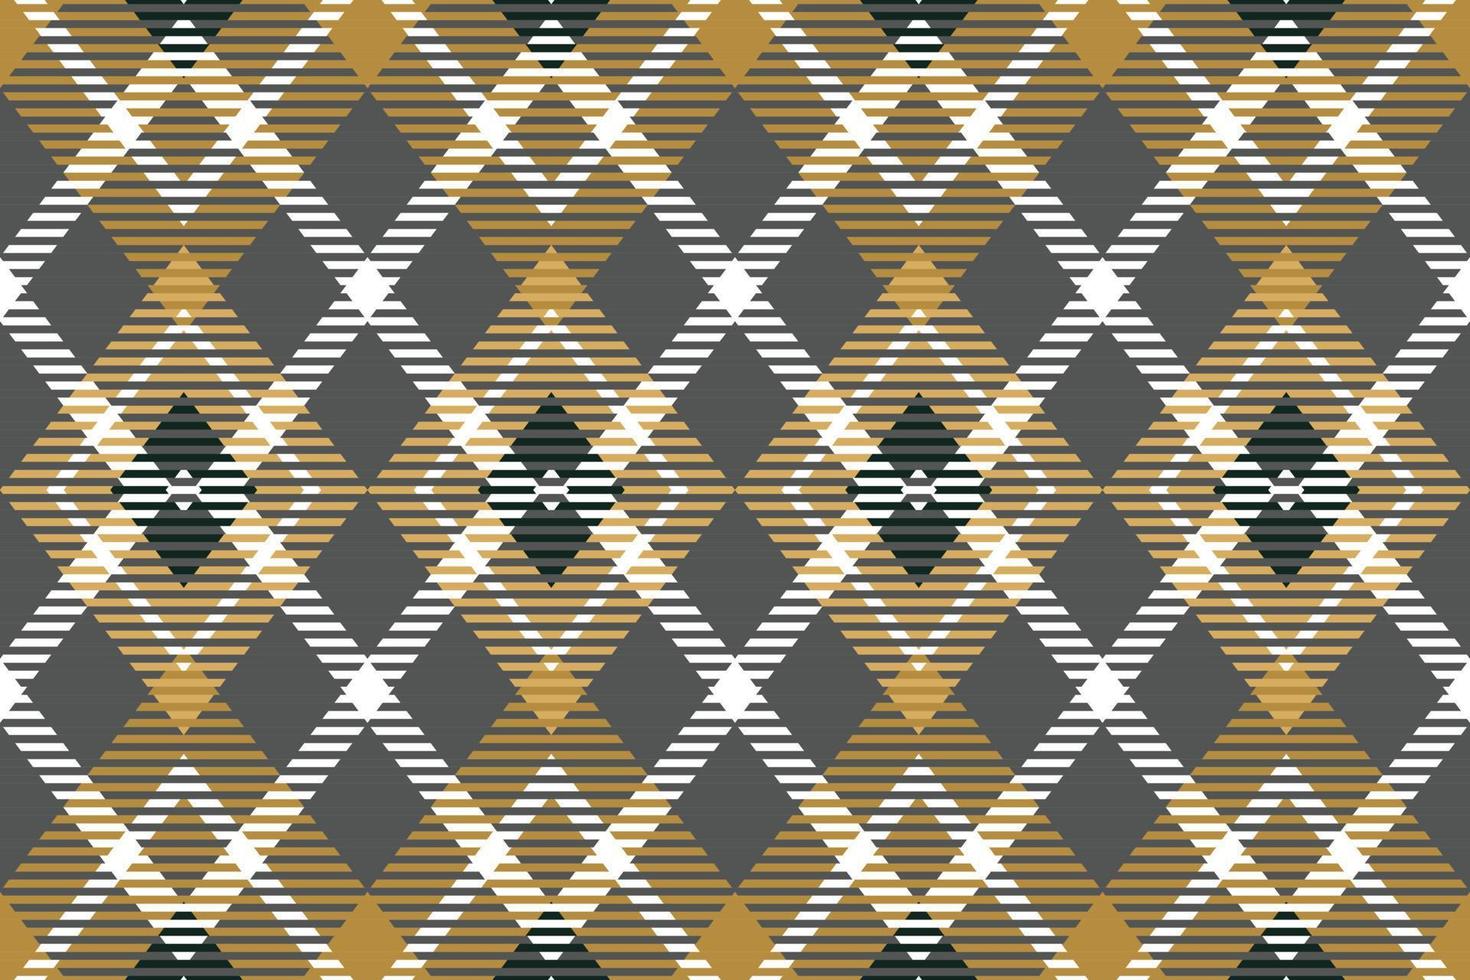 Büffel-Plaidmuster-Design-Textil wird in einem einfachen Twill gewebt, zwei über zwei unter der Kette, wobei bei jedem Durchgang ein Faden vorgeschoben wird. vektor